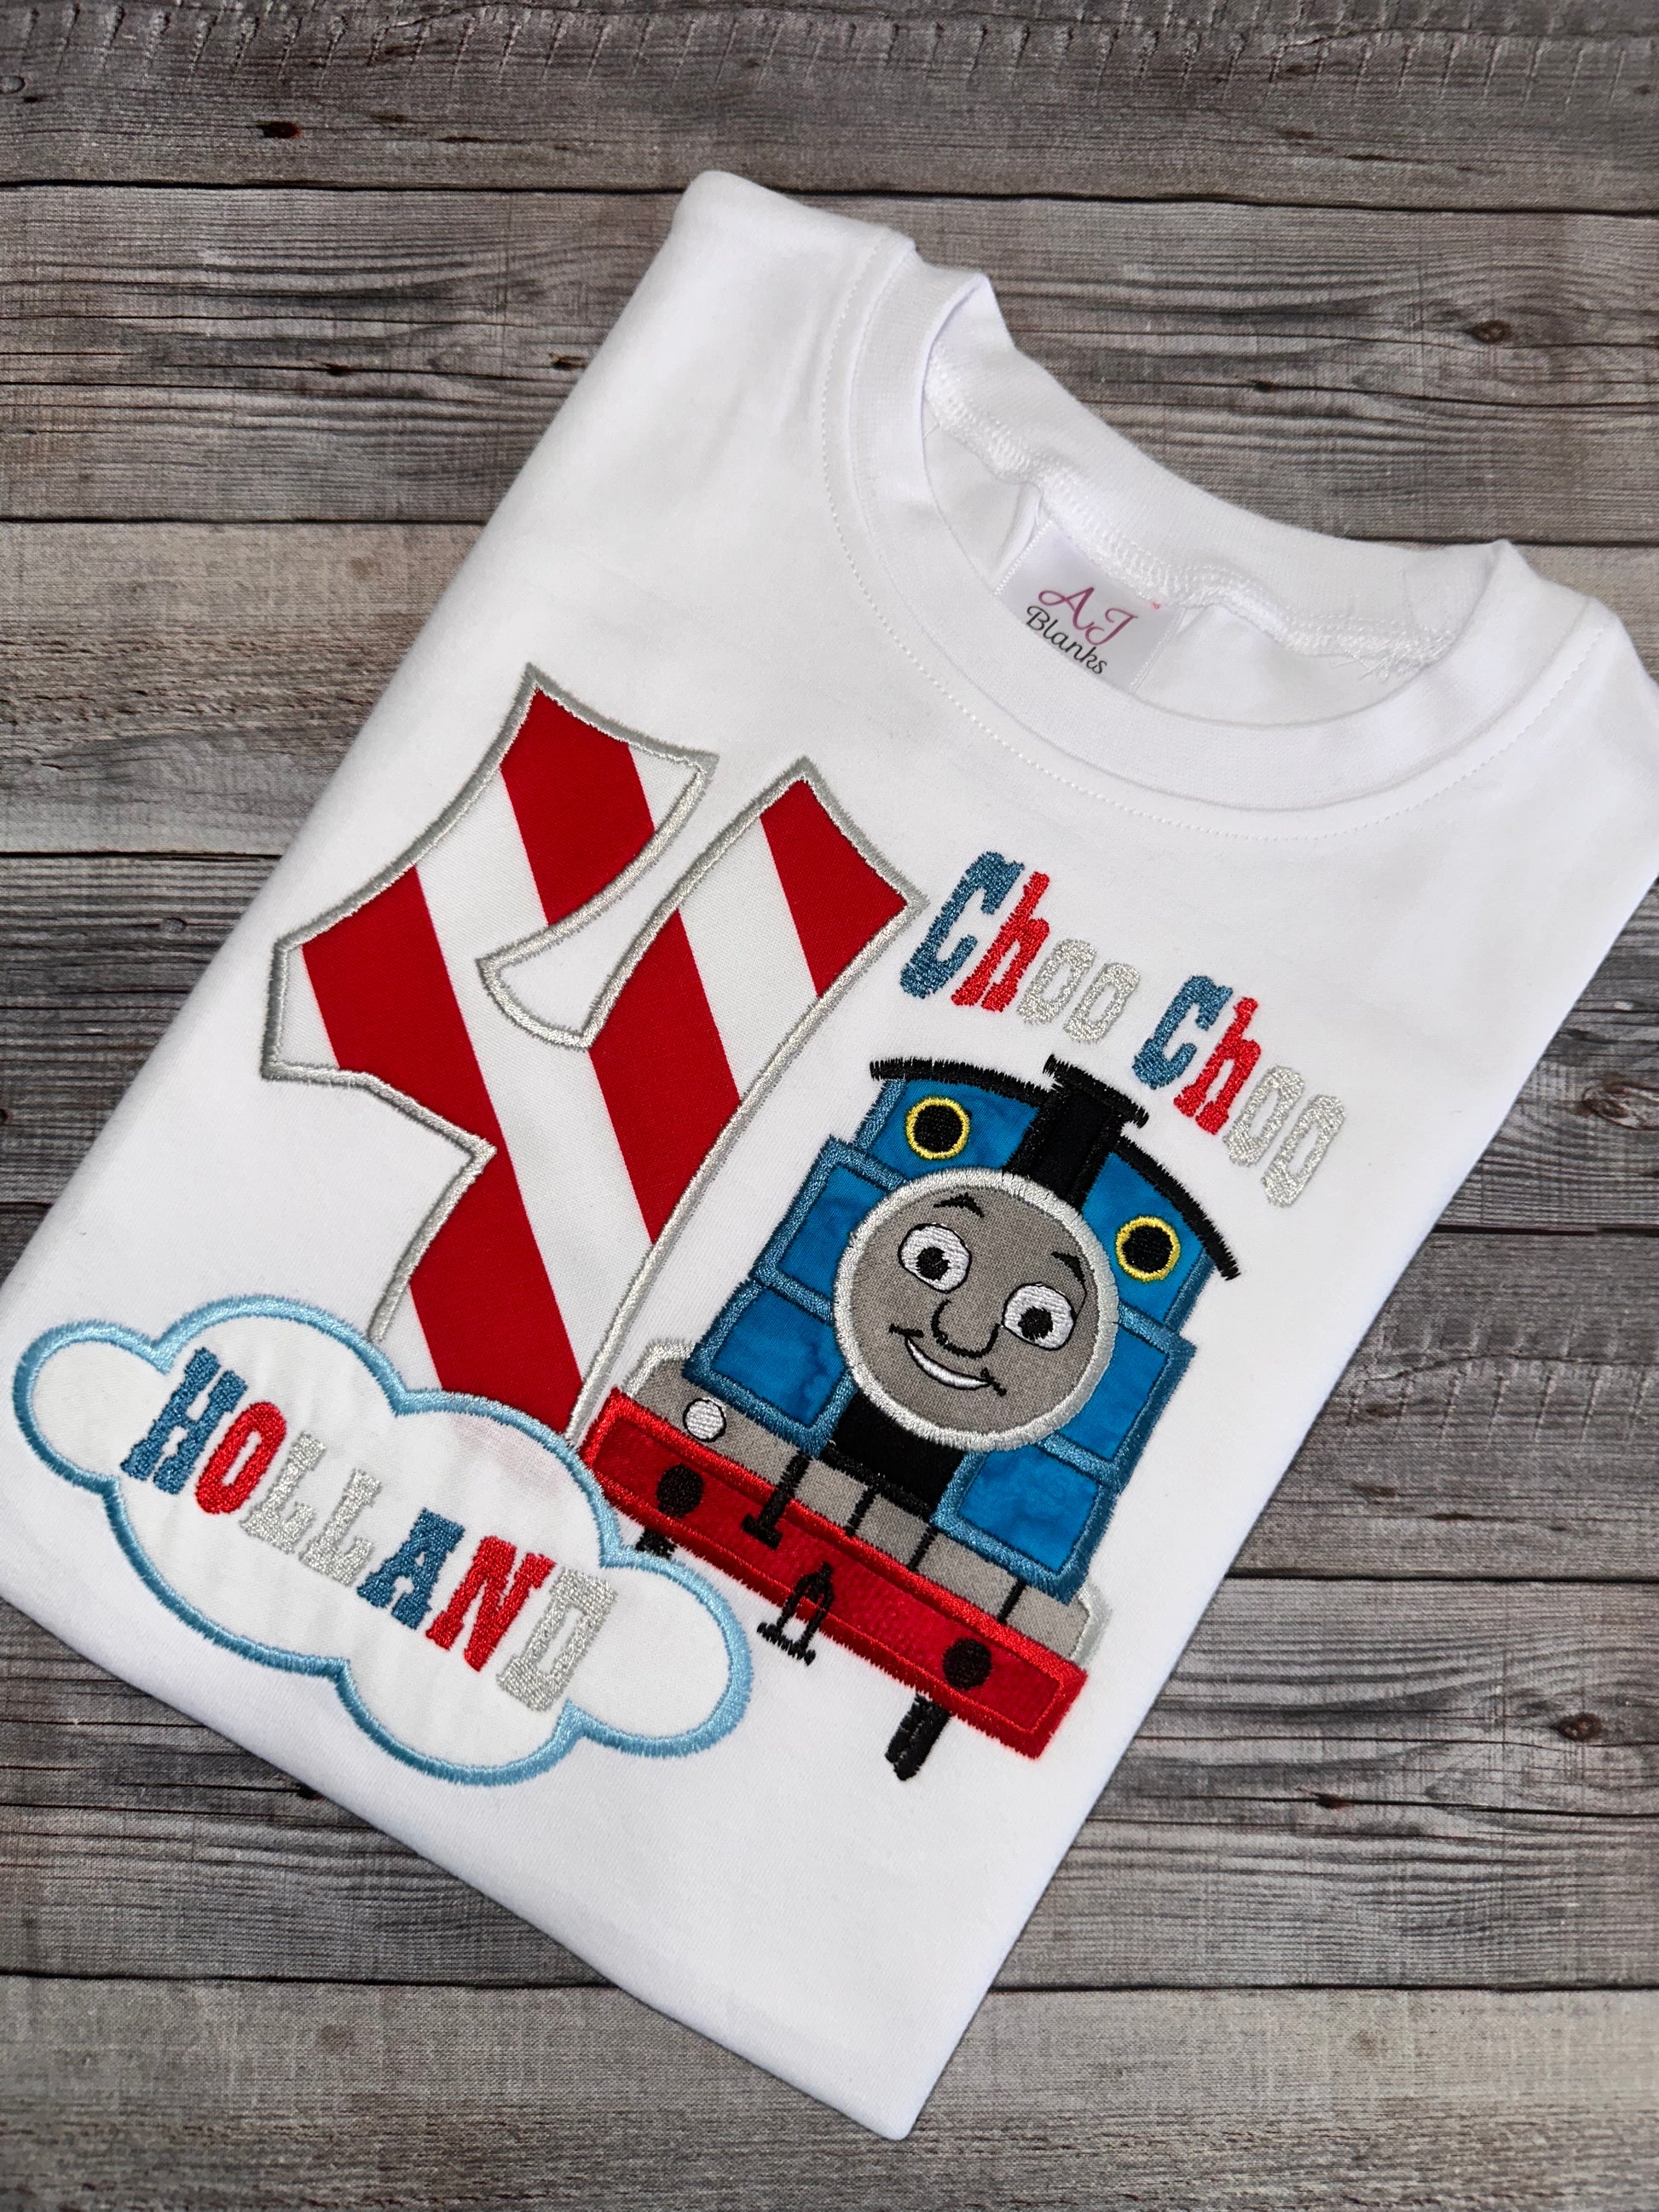 Thomas the train birthday shirt